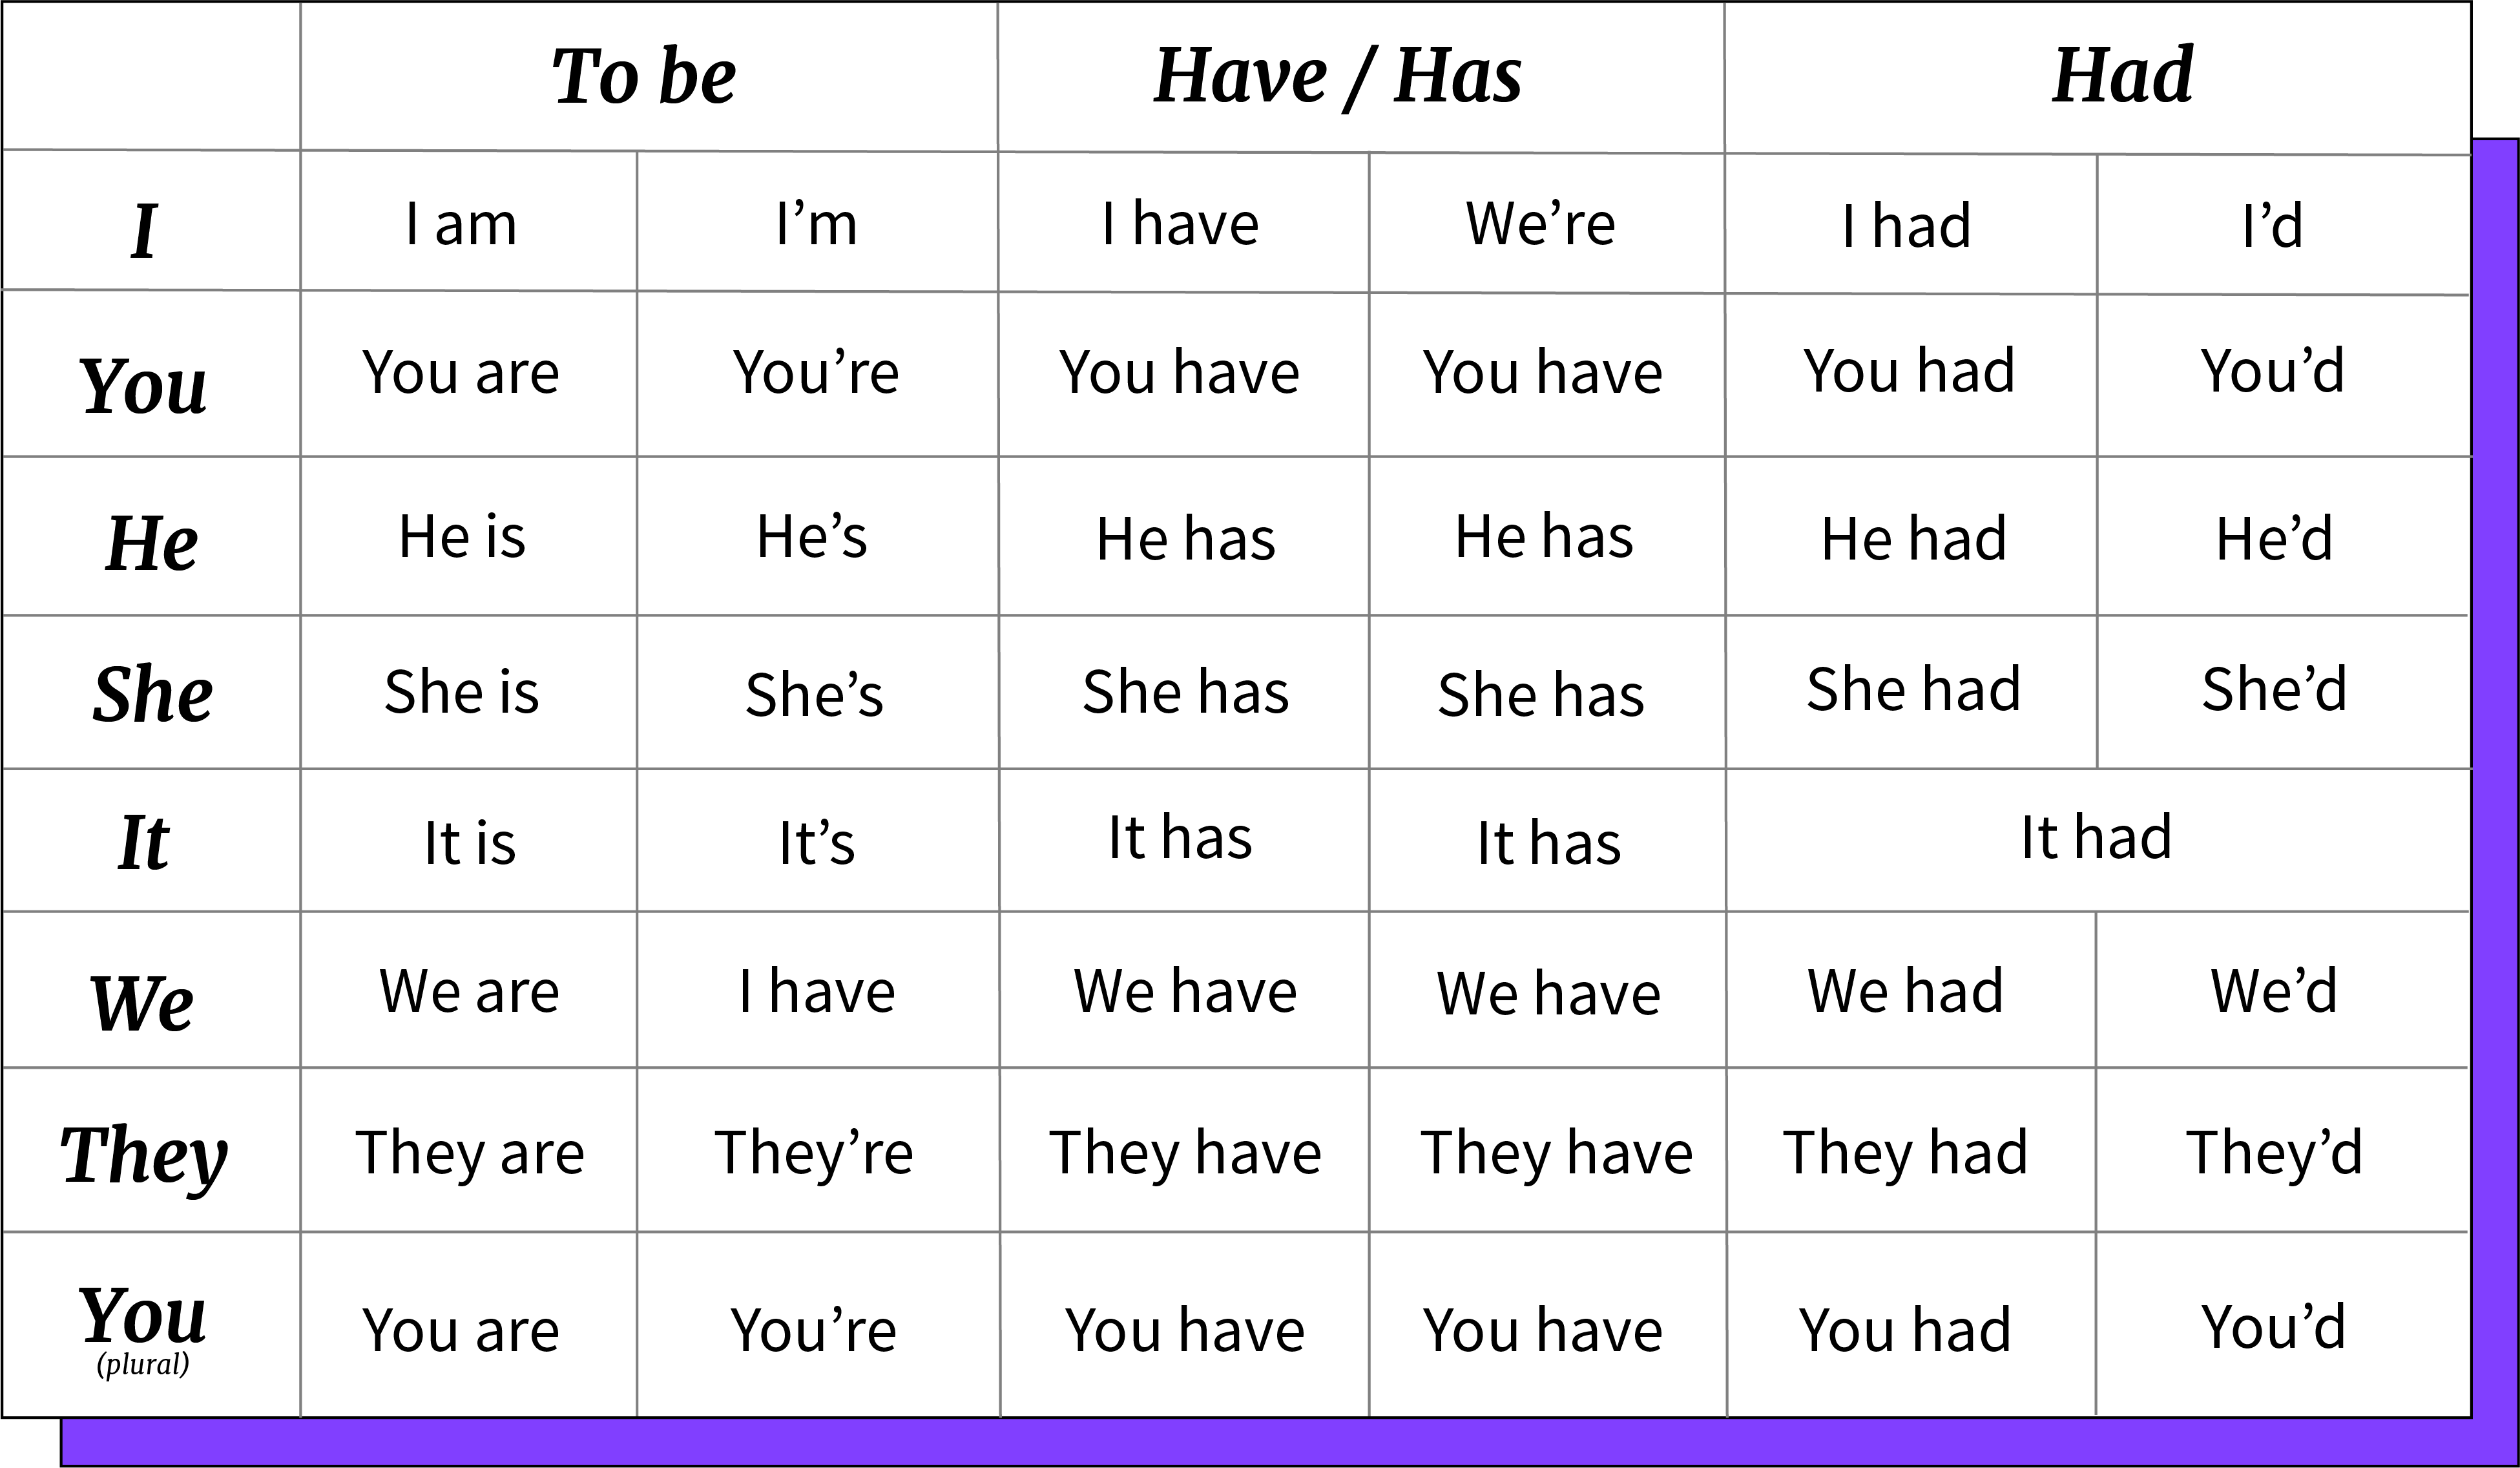 Imagen ejemplo de las contracciones de verbos To be, Have, Has y Had.